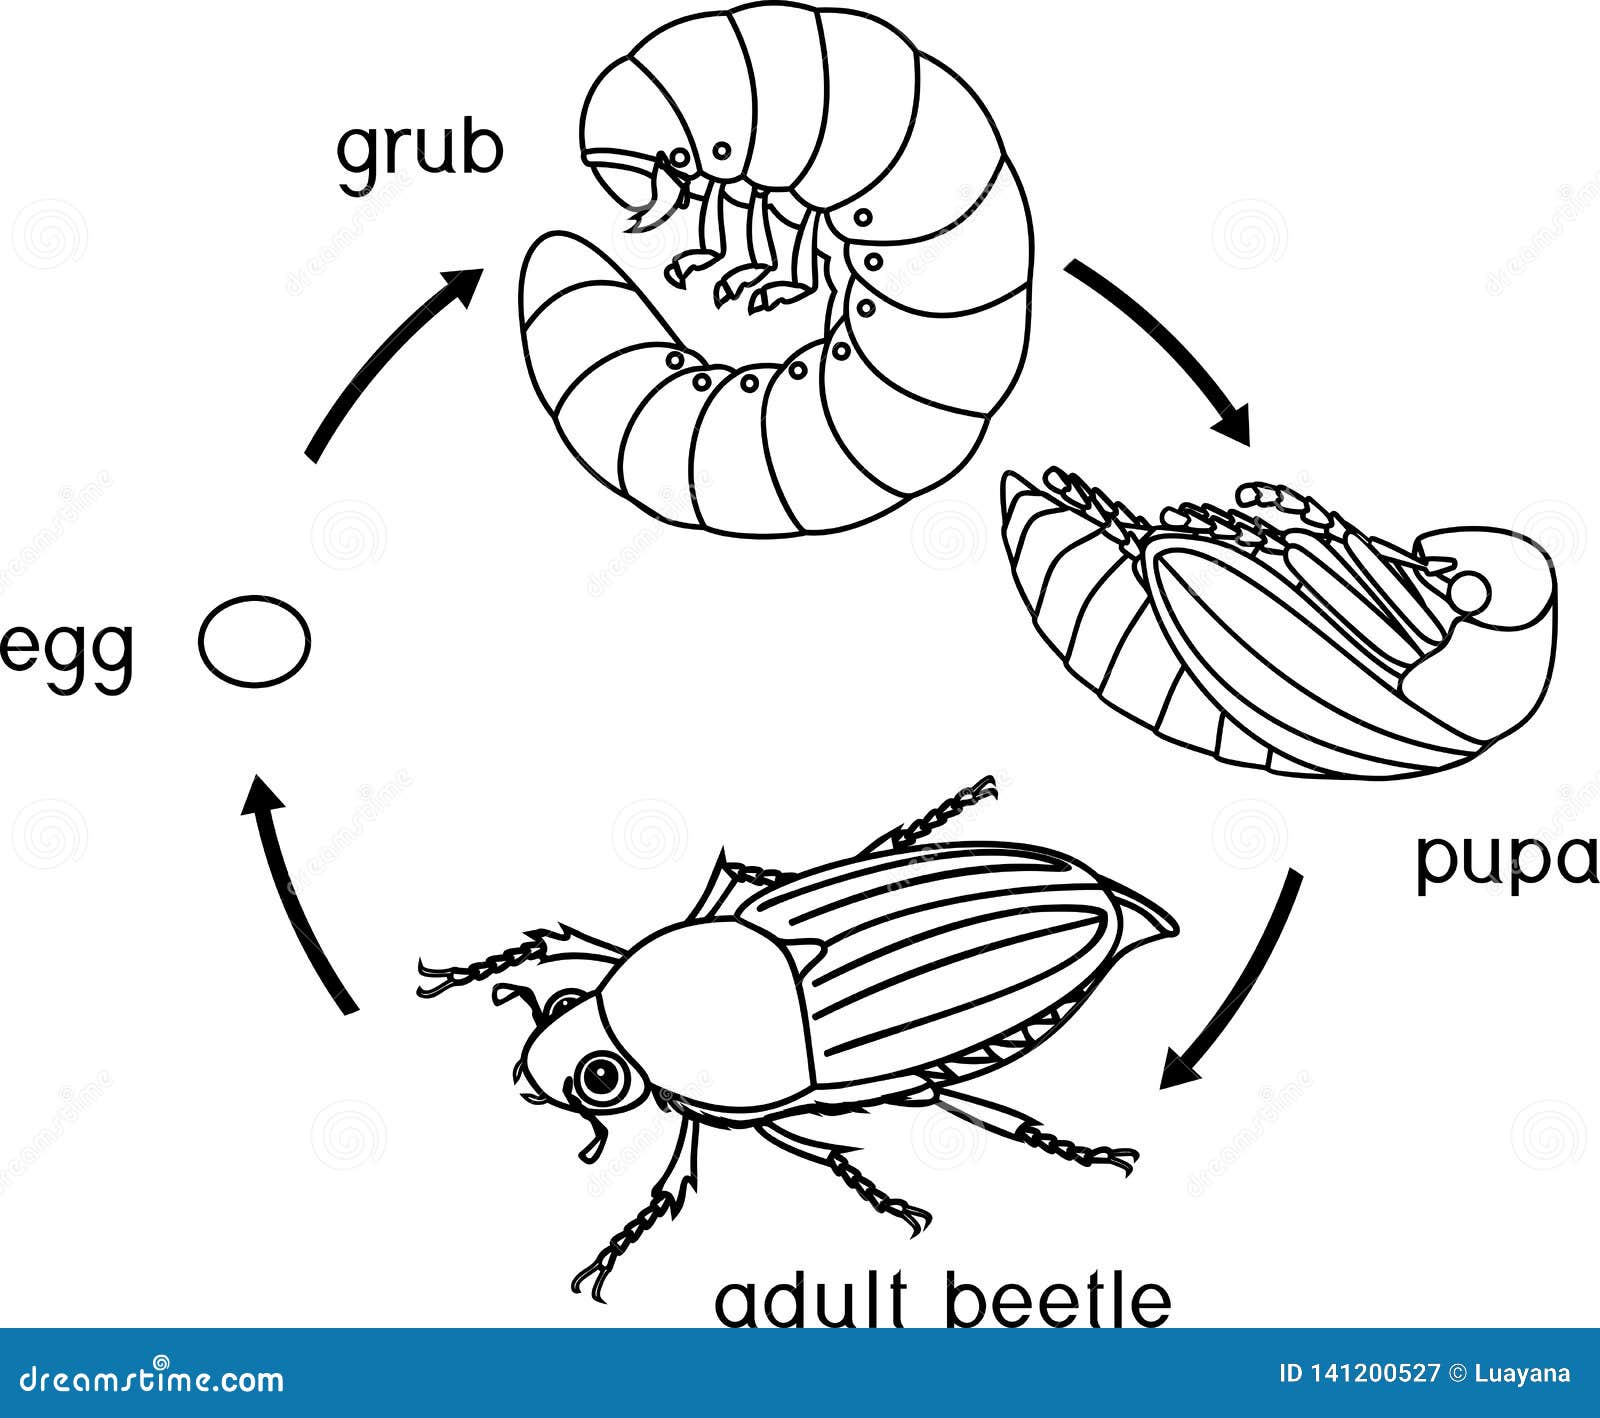 Какое развитие у жуков